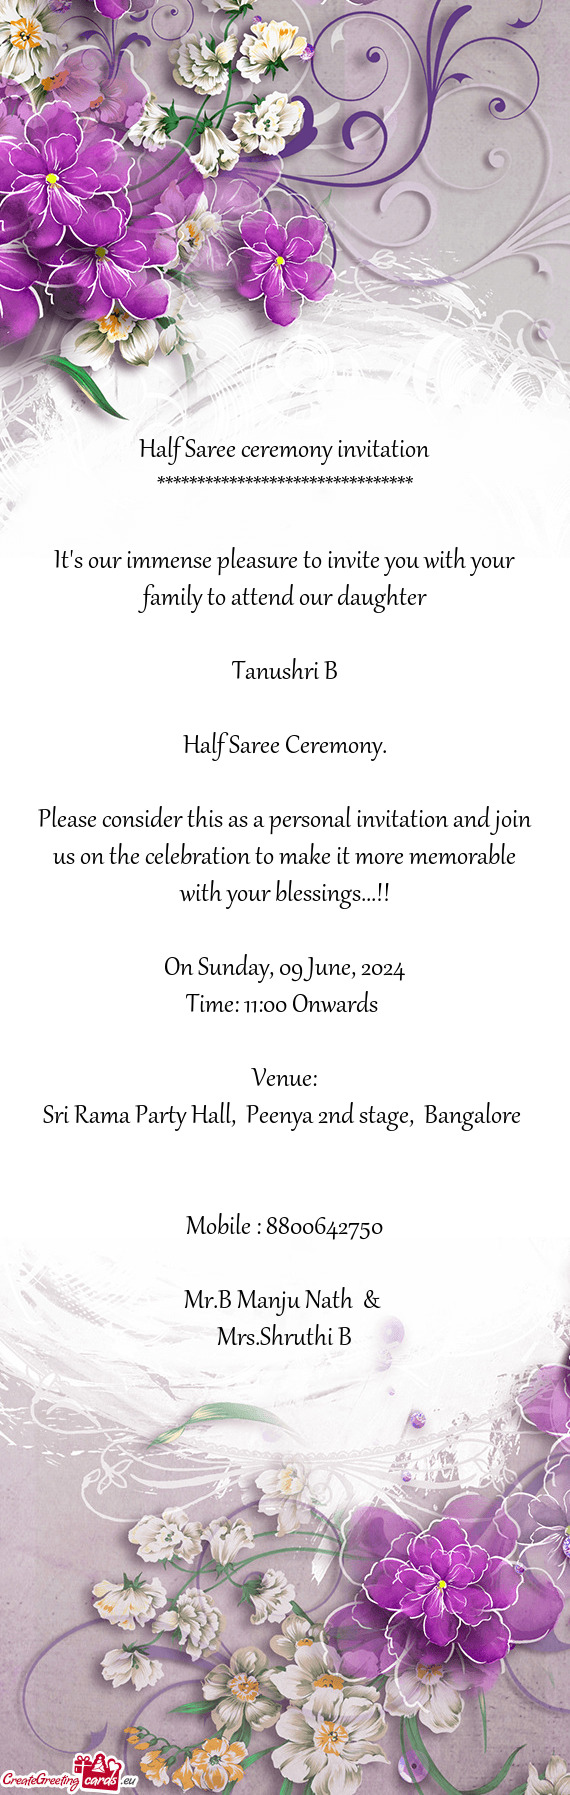 Sri Rama Party Hall, Peenya 2nd stage, Bangalore